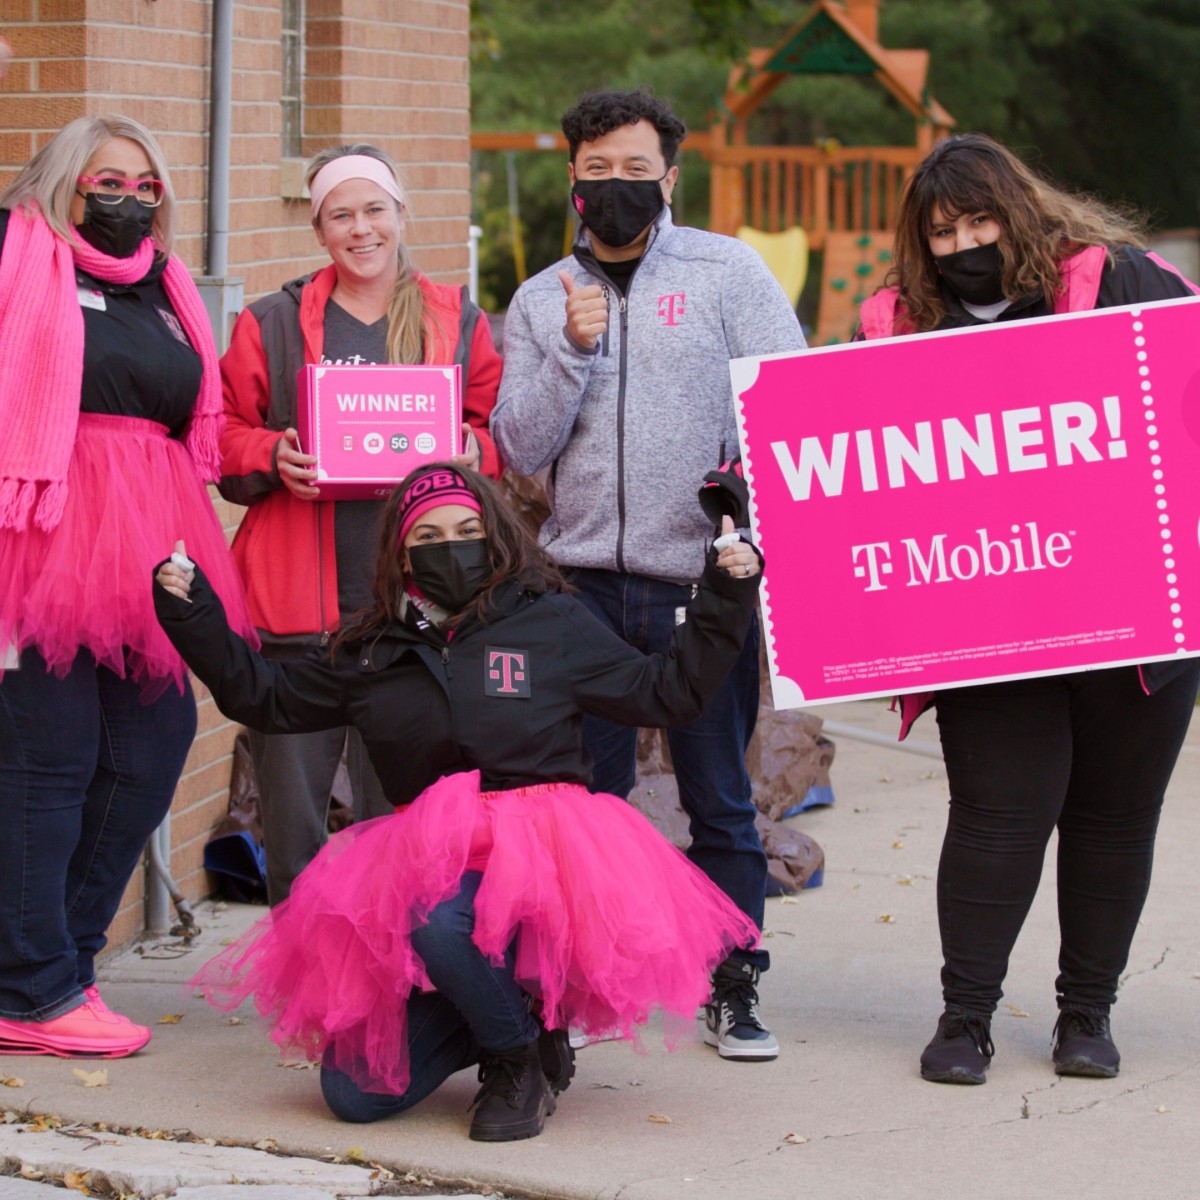 Un grupo de personas con accesorios de color rosa brillante, como tutús y bufandas, saludan y sonríen mientras sostienen un gran cheque rosa brillante que dice "¡Ganador!" con la marca T-Mobile.